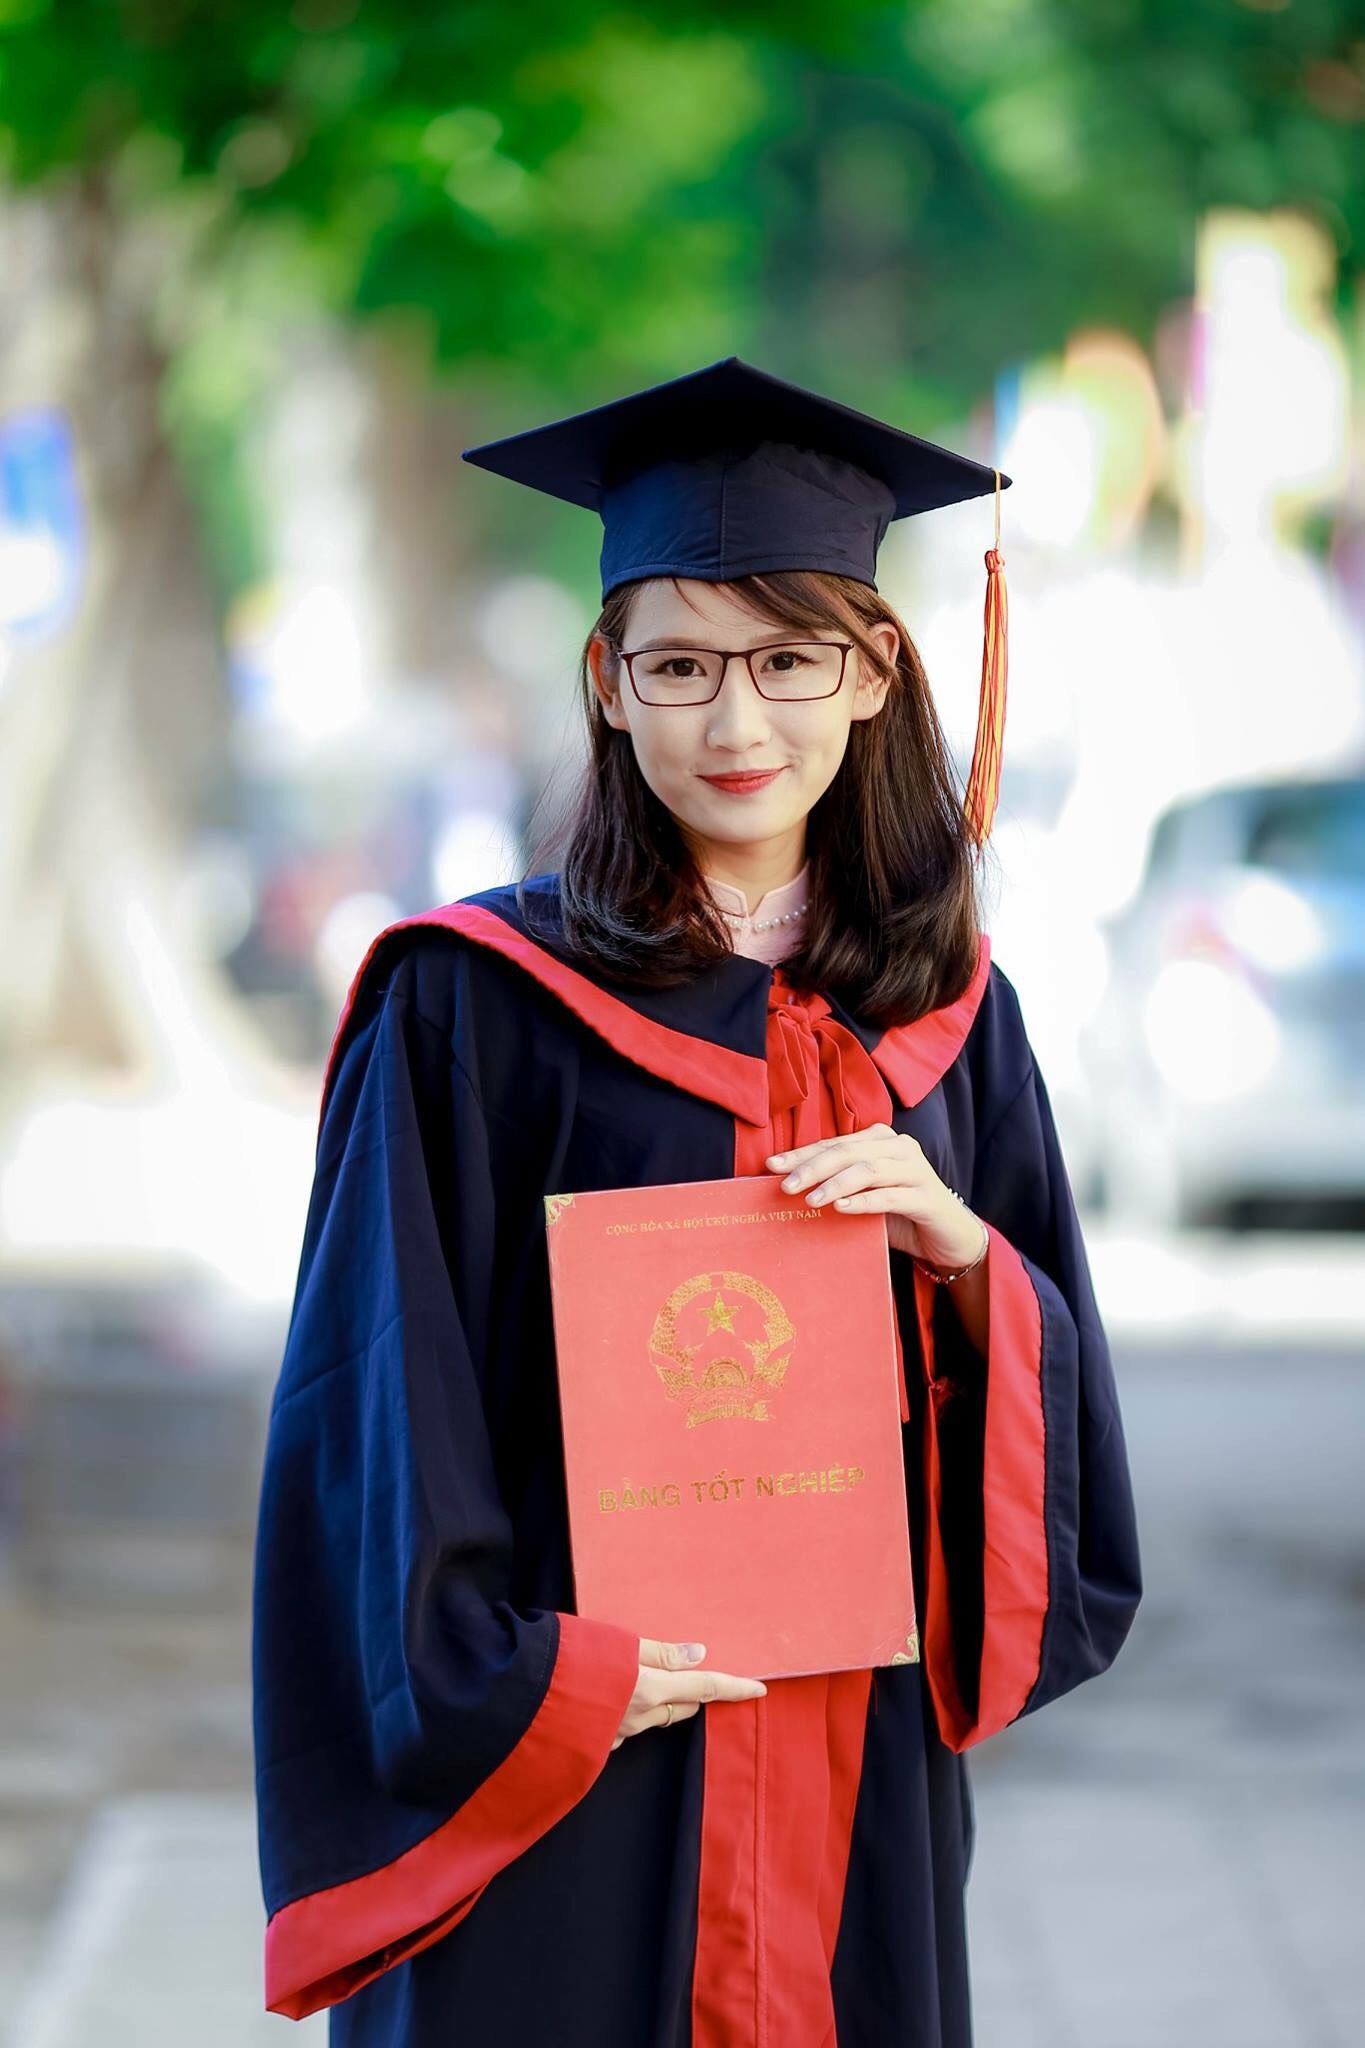 Đặng Thu Hòa là thủ khoa tốt nghiệp toàn khóa năm 2017 của Trường Đại học Khoa học Xã hội và Nhân văn, Đại học Quốc gia Hà Nội.